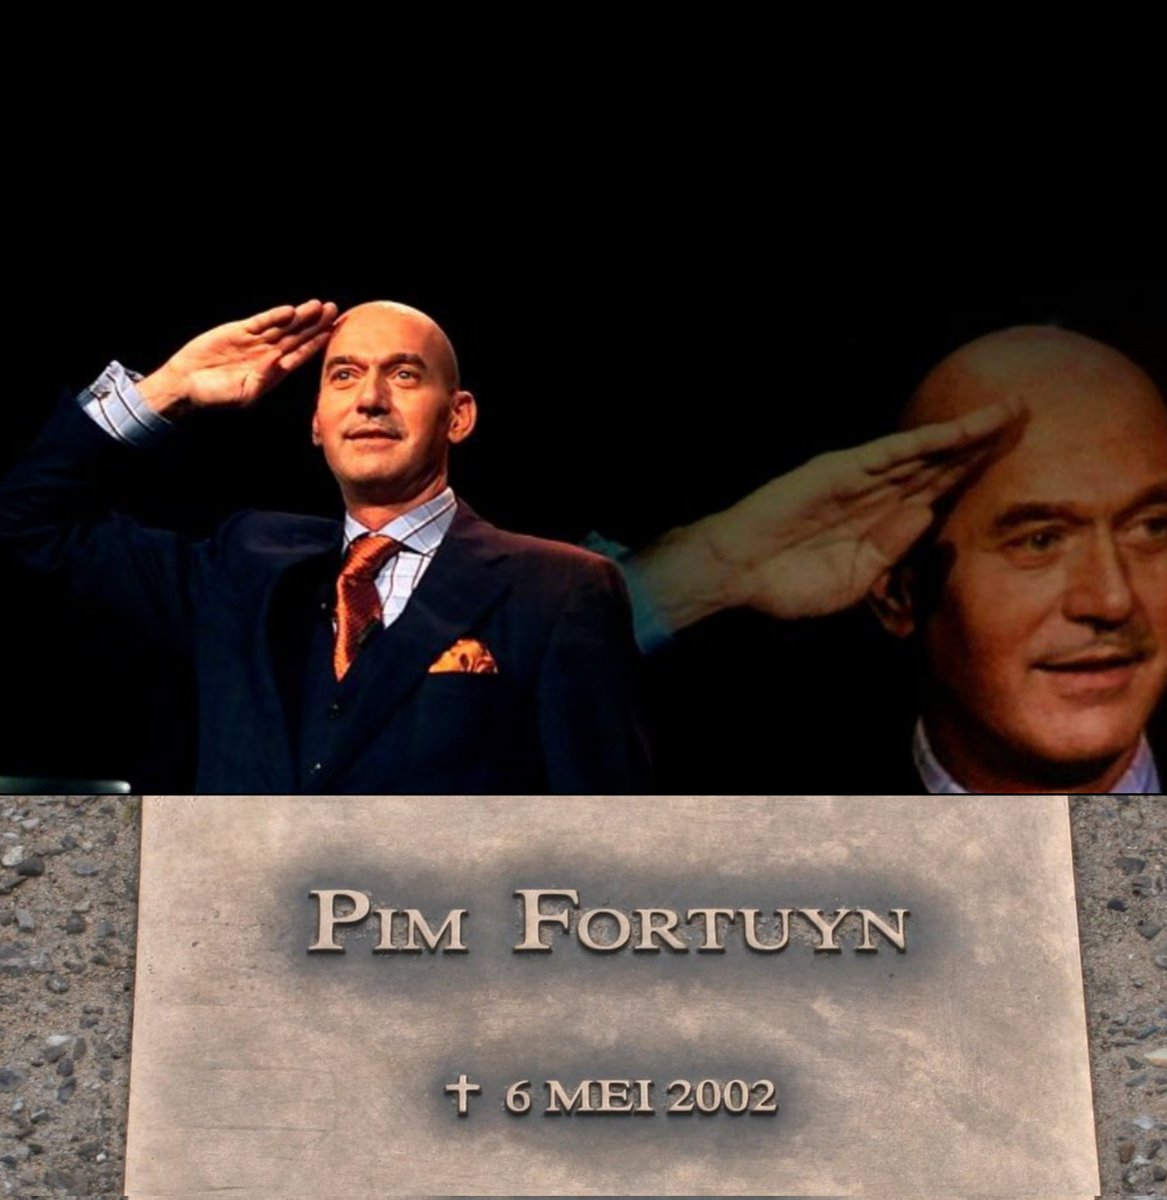 Vandaag denken we aan #Pim_Fortuyn die Nederland in 2002 wakker heeft geschud, een grote verkiezingswinst boekte bij de gemeenteraads verkiezingen, werd gedemoniseerd door Linkse politici en media en DAARDOOR uiteindelijk werd vermoord door een verknipt XR achtig type. #Fortuyn